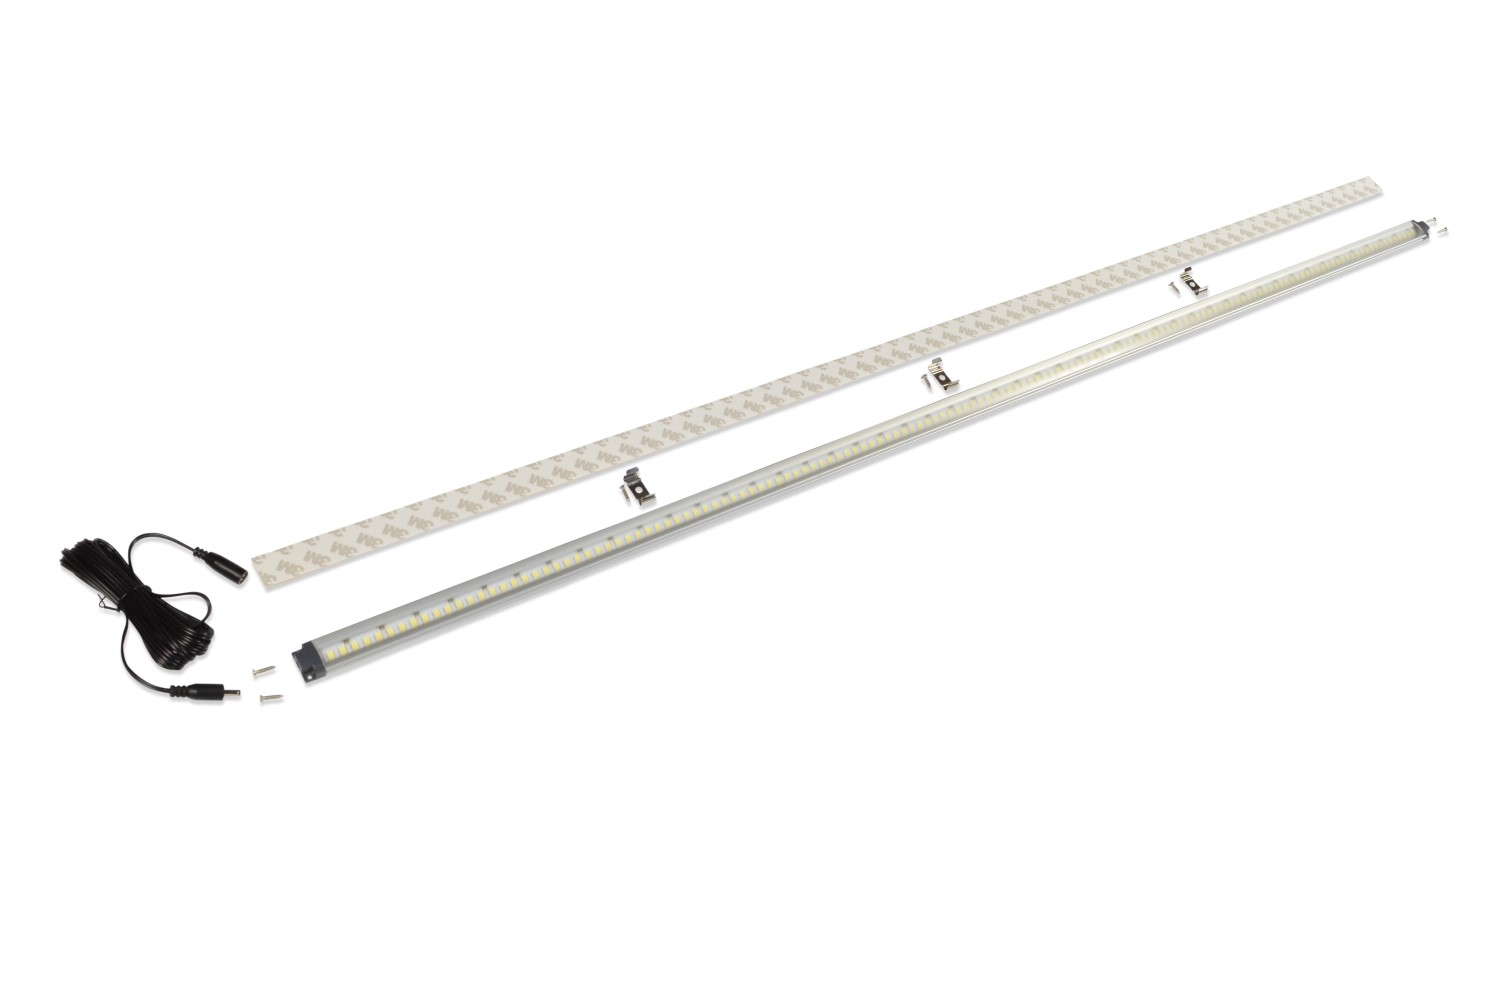 Laadruimte verlichting Zevim LED strip 100 cm | Parts Expert